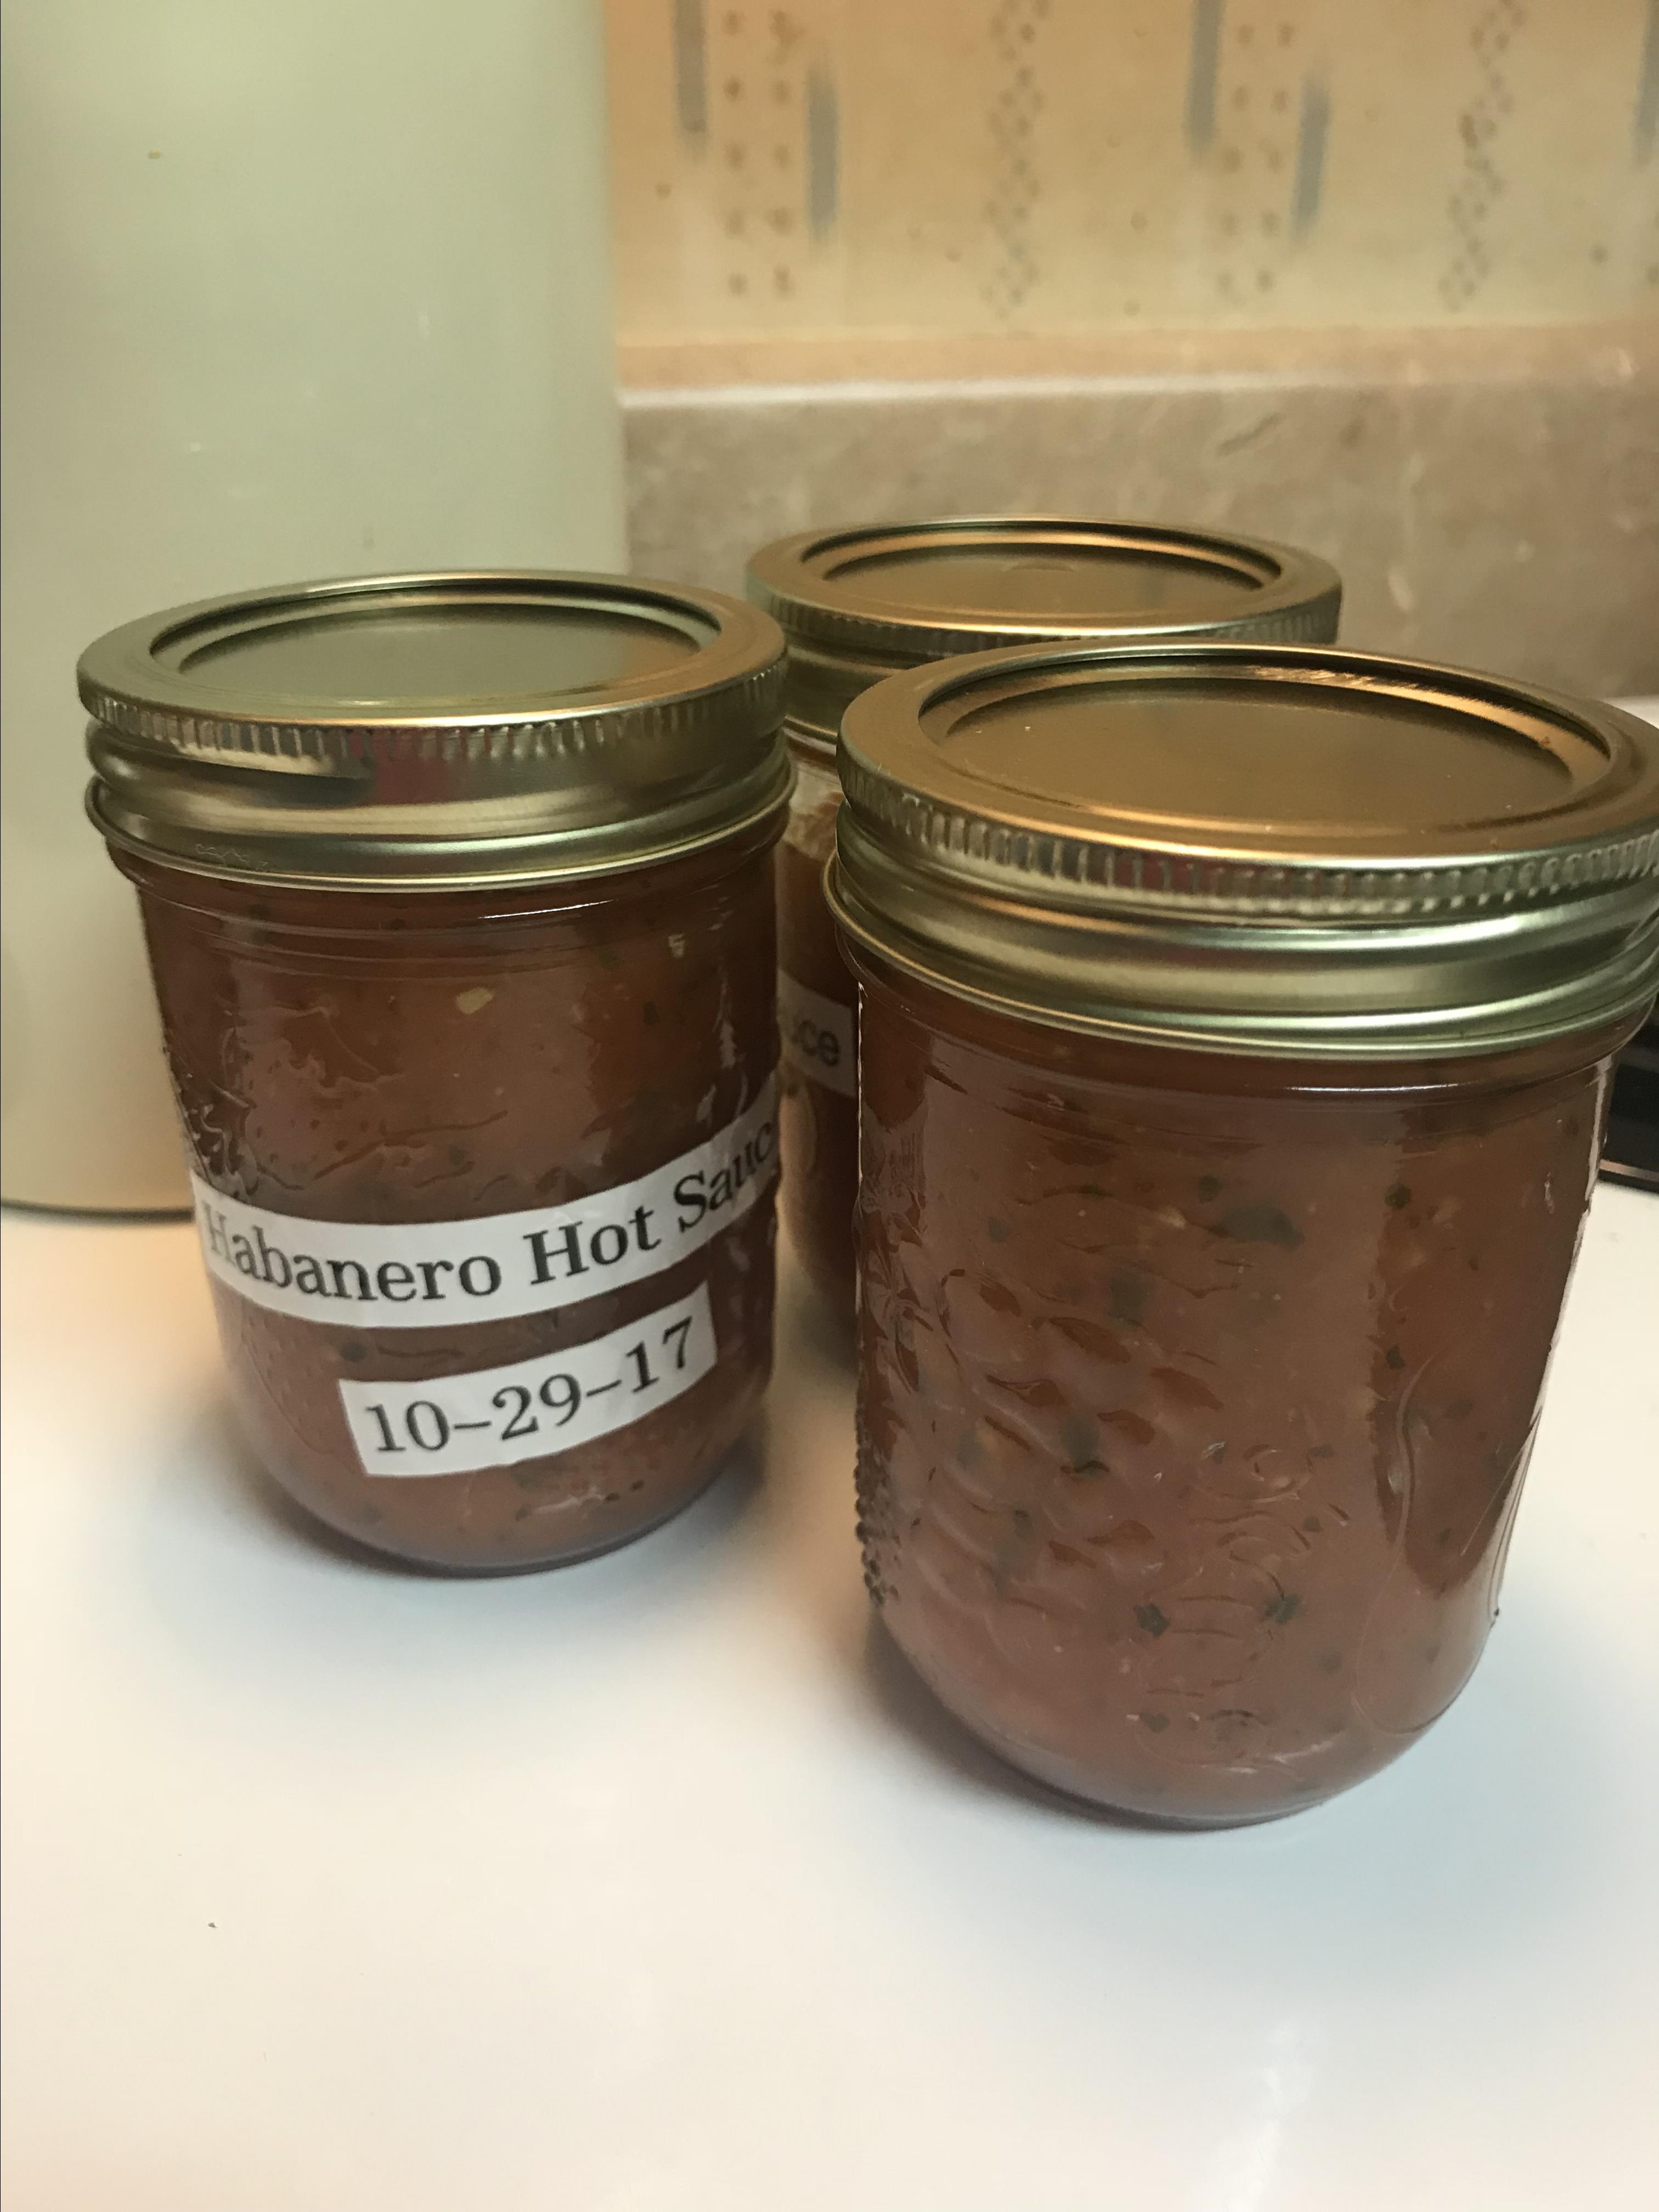 Homemade Habanero Hot Sauce